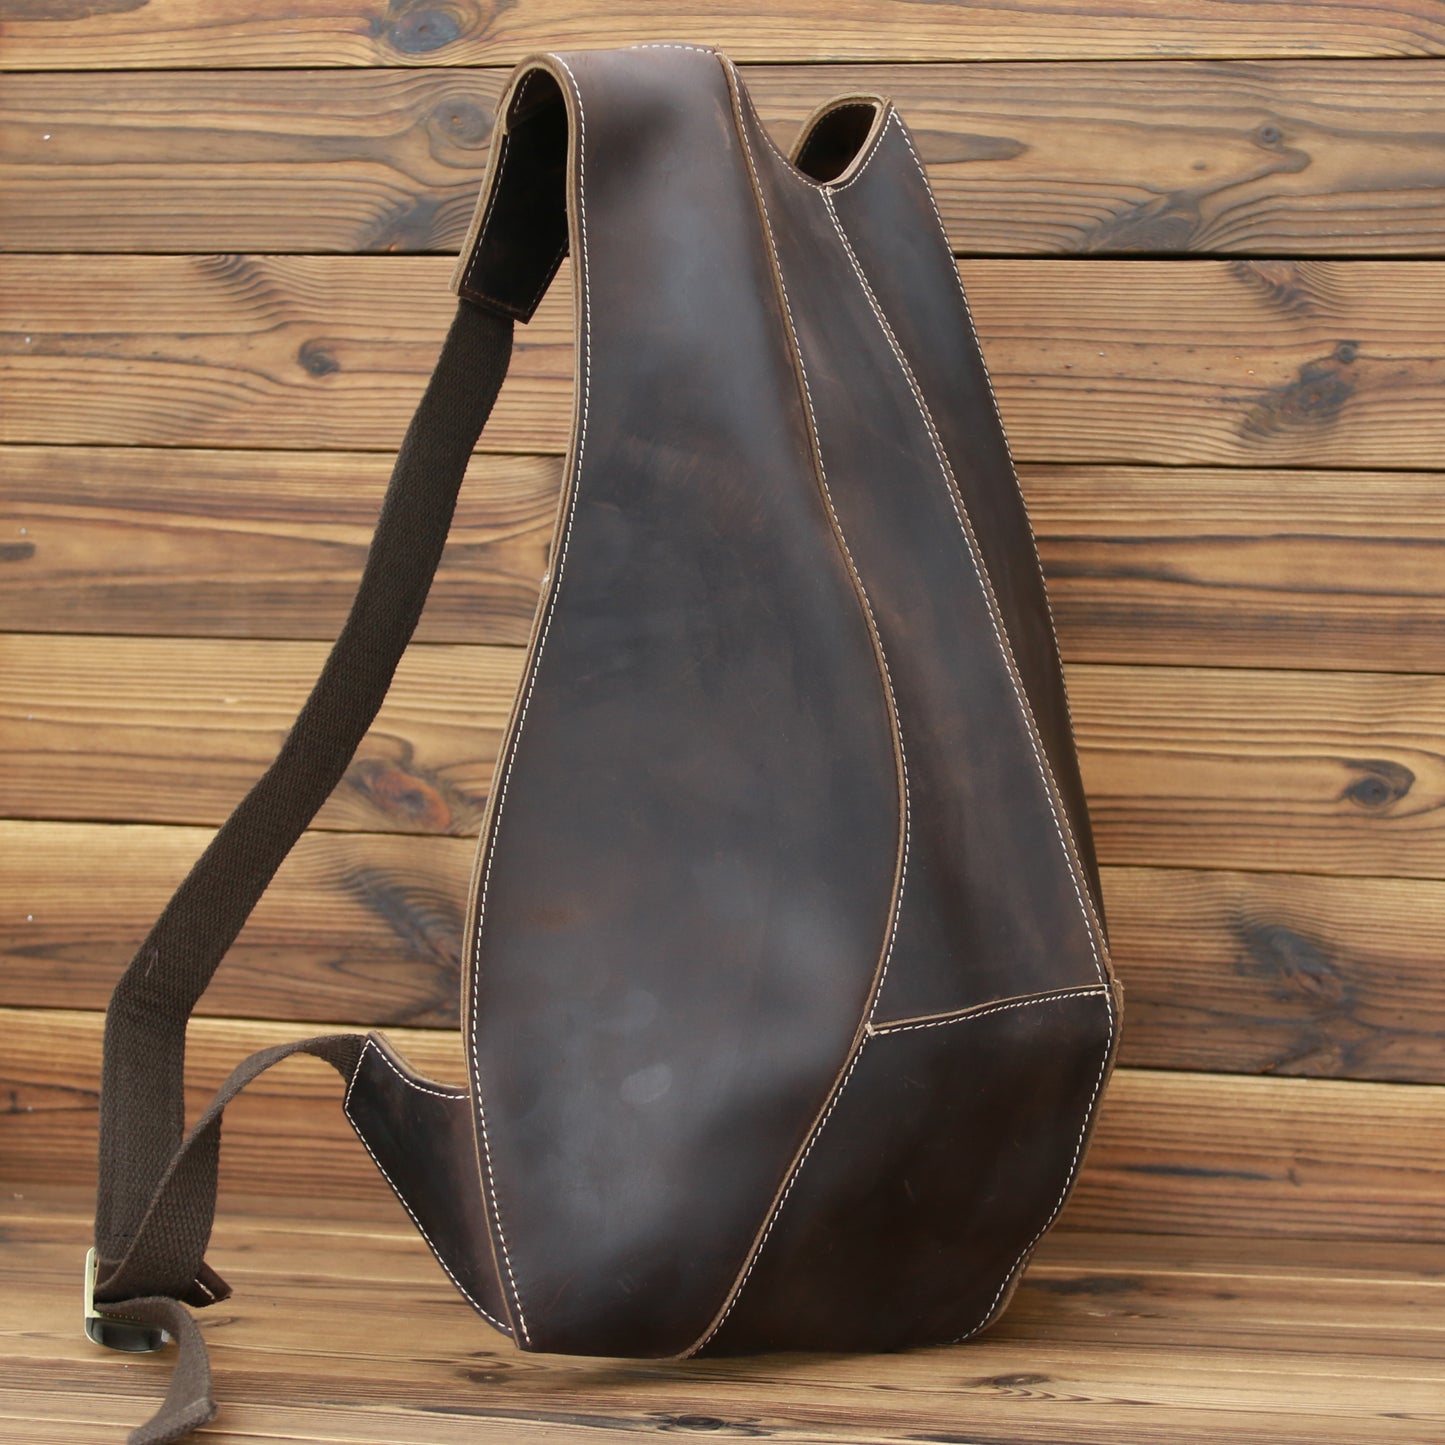 TEEK - Molded Backpack BAG theteekdotcom Adjustable-02  